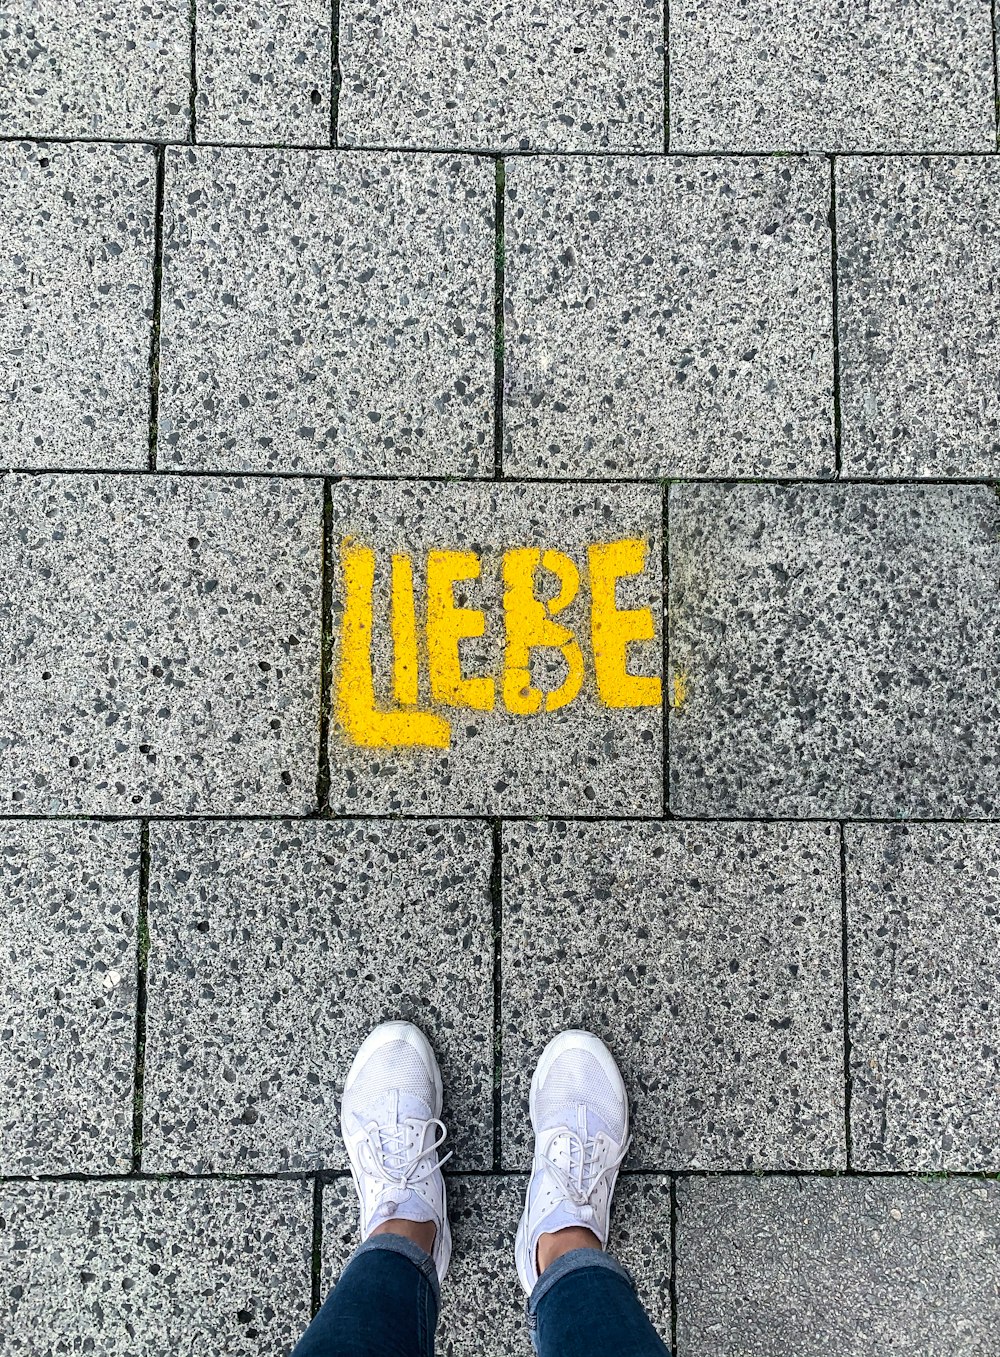 Una persona parada frente a una acera con la palabra Liebe pintada en ella